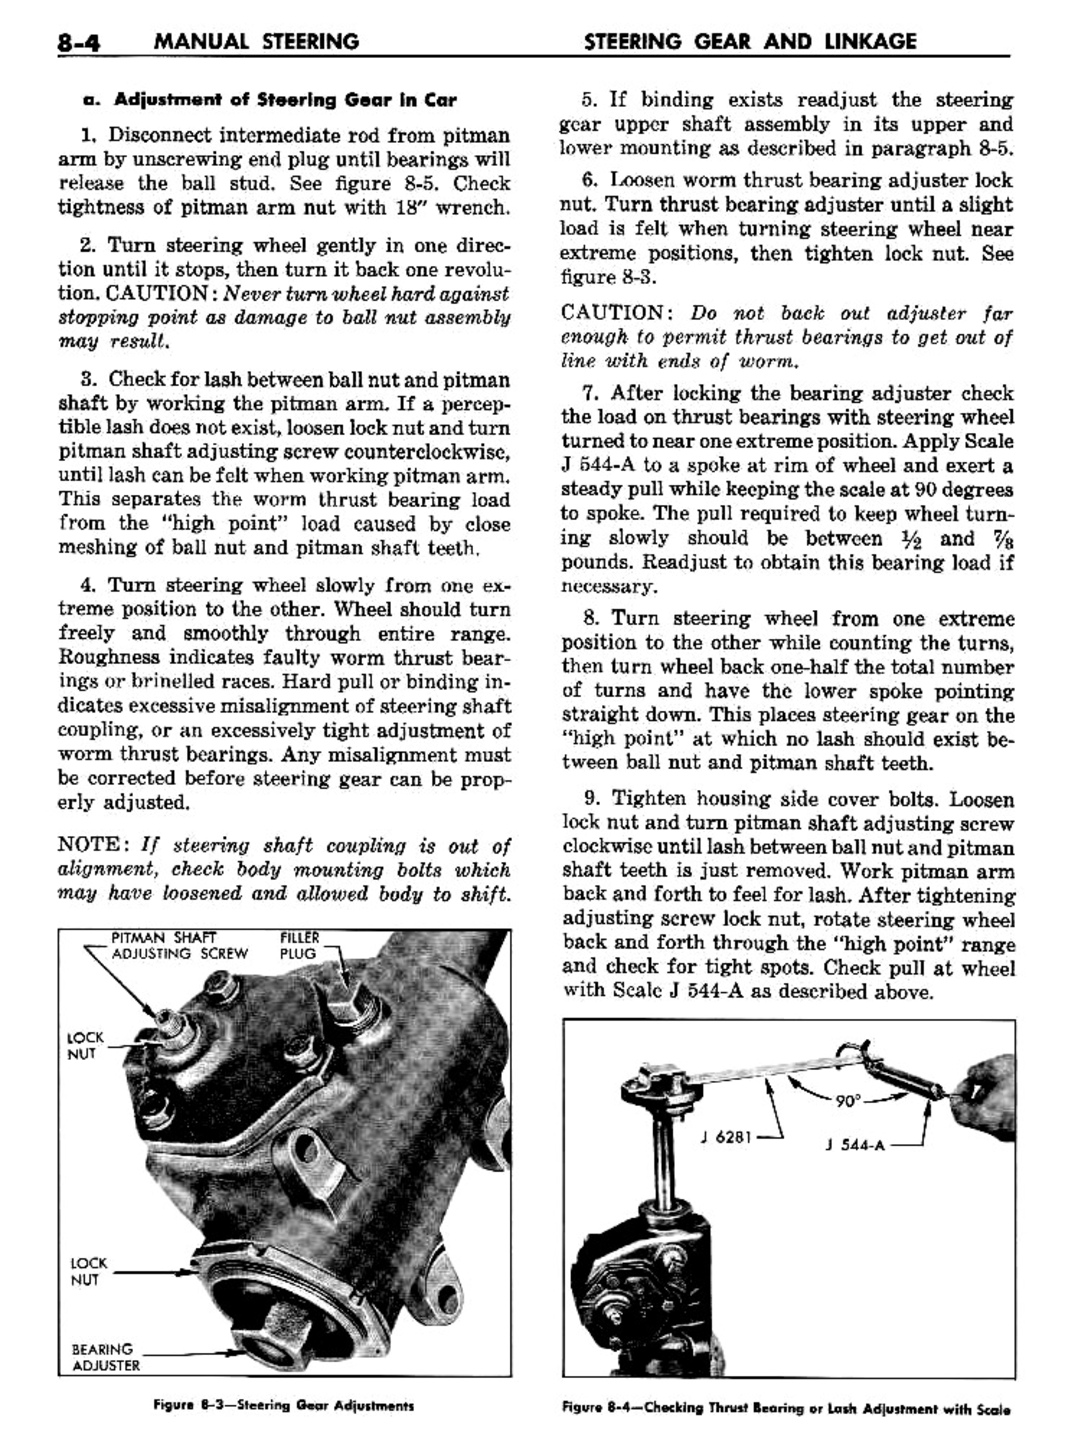 n_09 1957 Buick Shop Manual - Steering-004-004.jpg